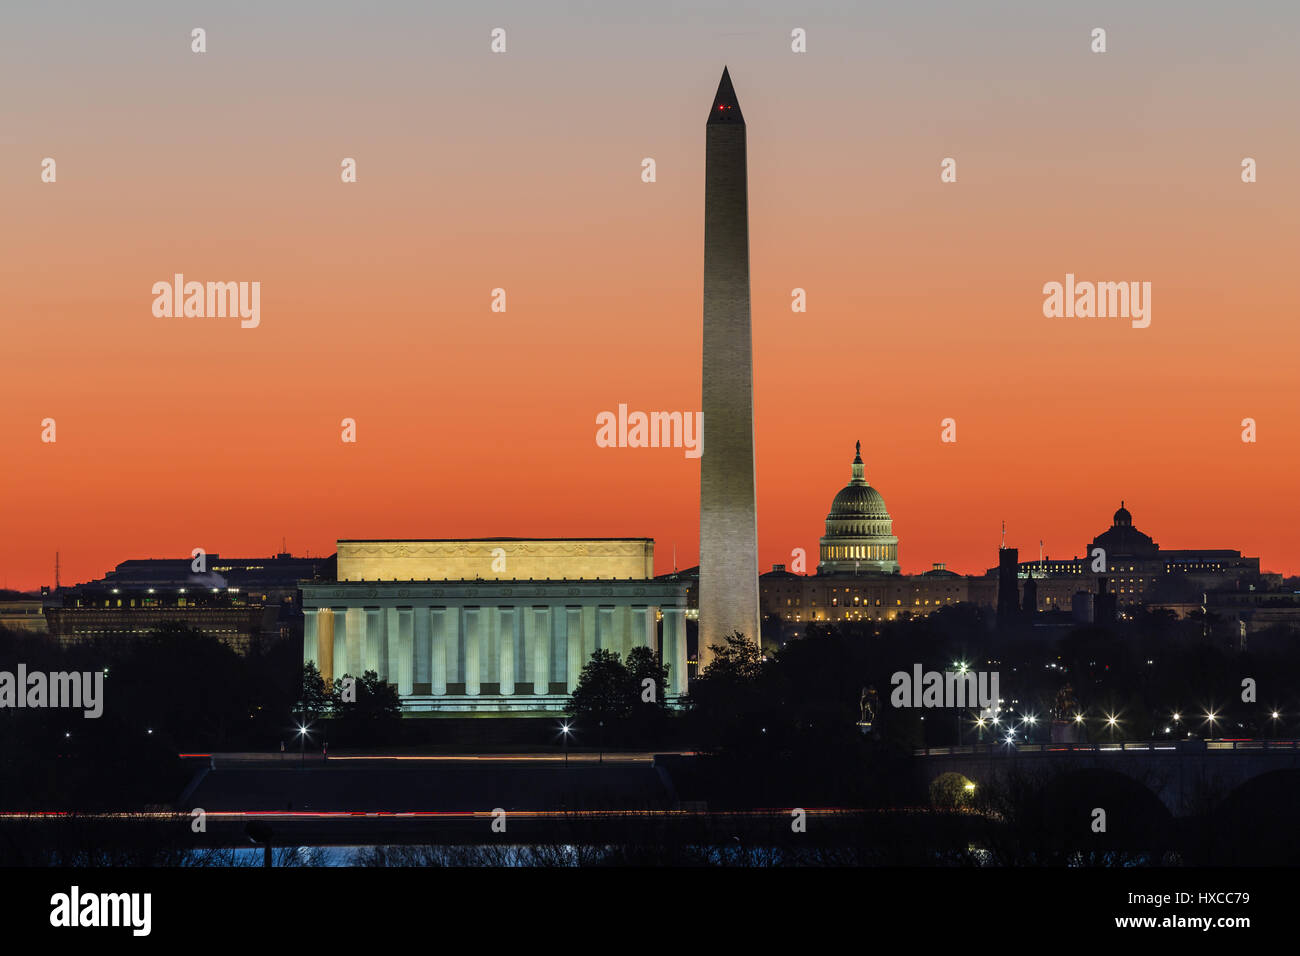 Das Lincoln Memorial, Washington Monument und US Capitol Gebäude gesetzt gegen einen orangefarbenen Himmel während der Morgendämmerung in Washington, DC. Stockfoto